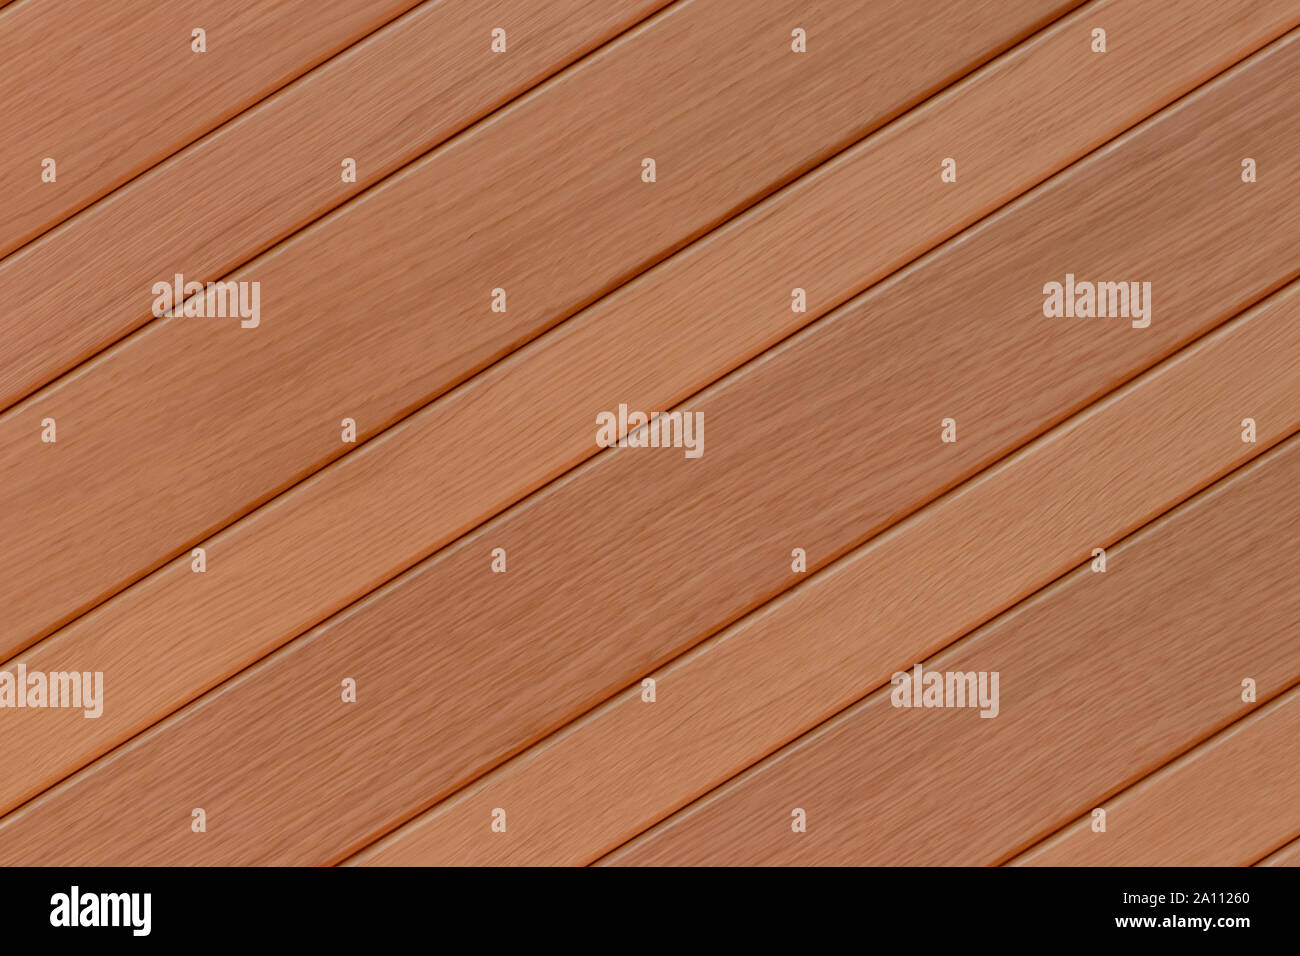 Holz Textur Hintergrund. Nahaufnahme von einem Detail aus einem schönen Holz- hellbraun Eingangstür. Makro. Stockfoto